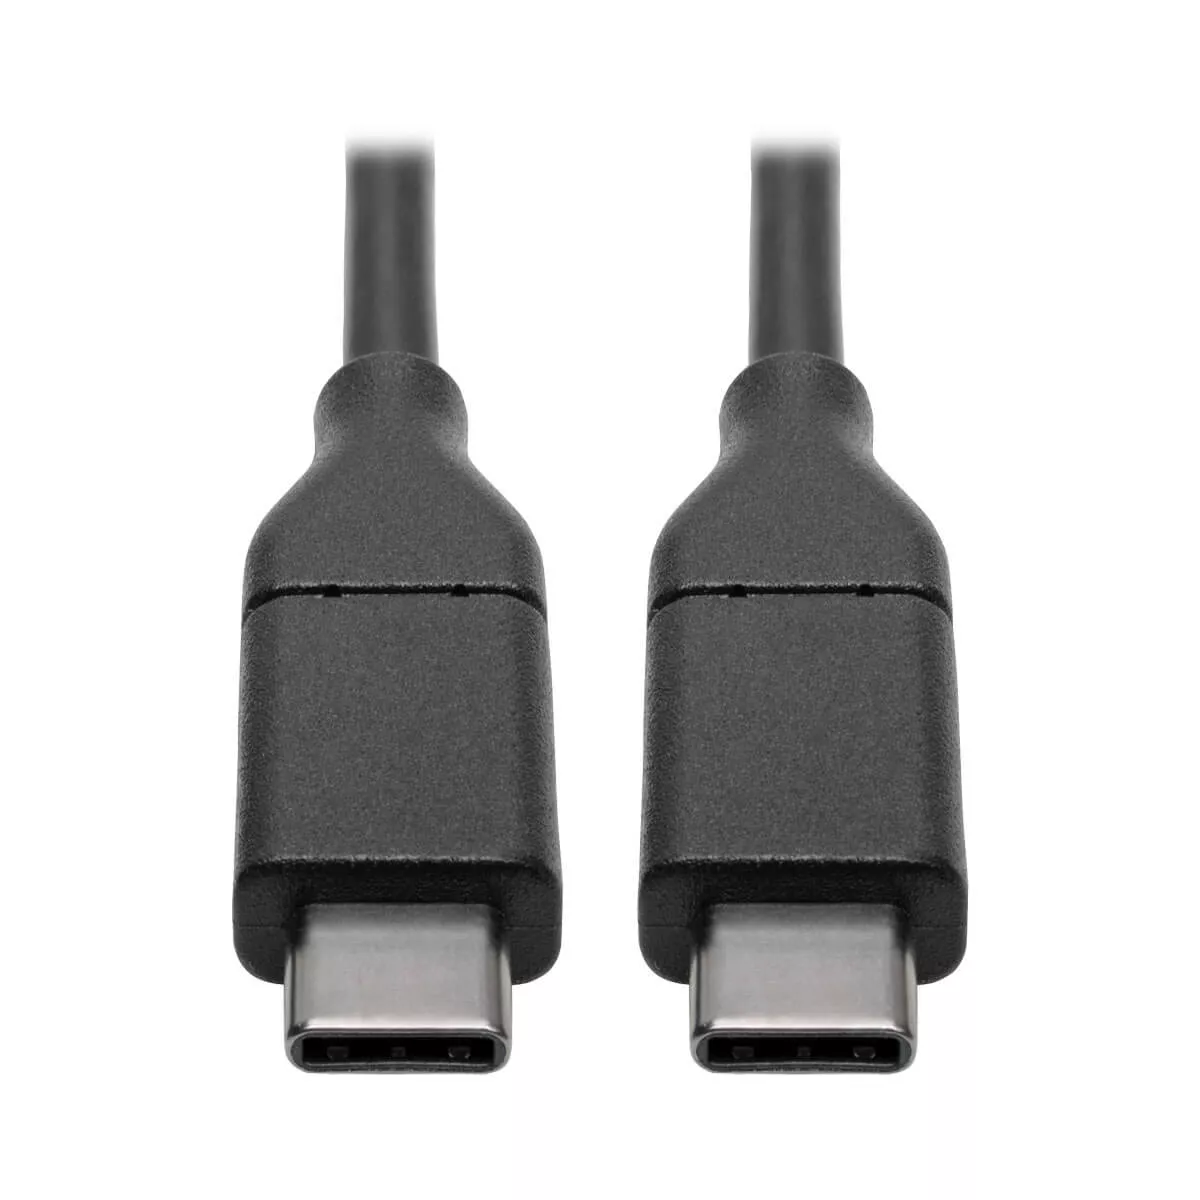 Vente Câble USB EATON TRIPPLITE USB-C Cable M/M - USB 2.0 5A Rated 6ft sur hello RSE